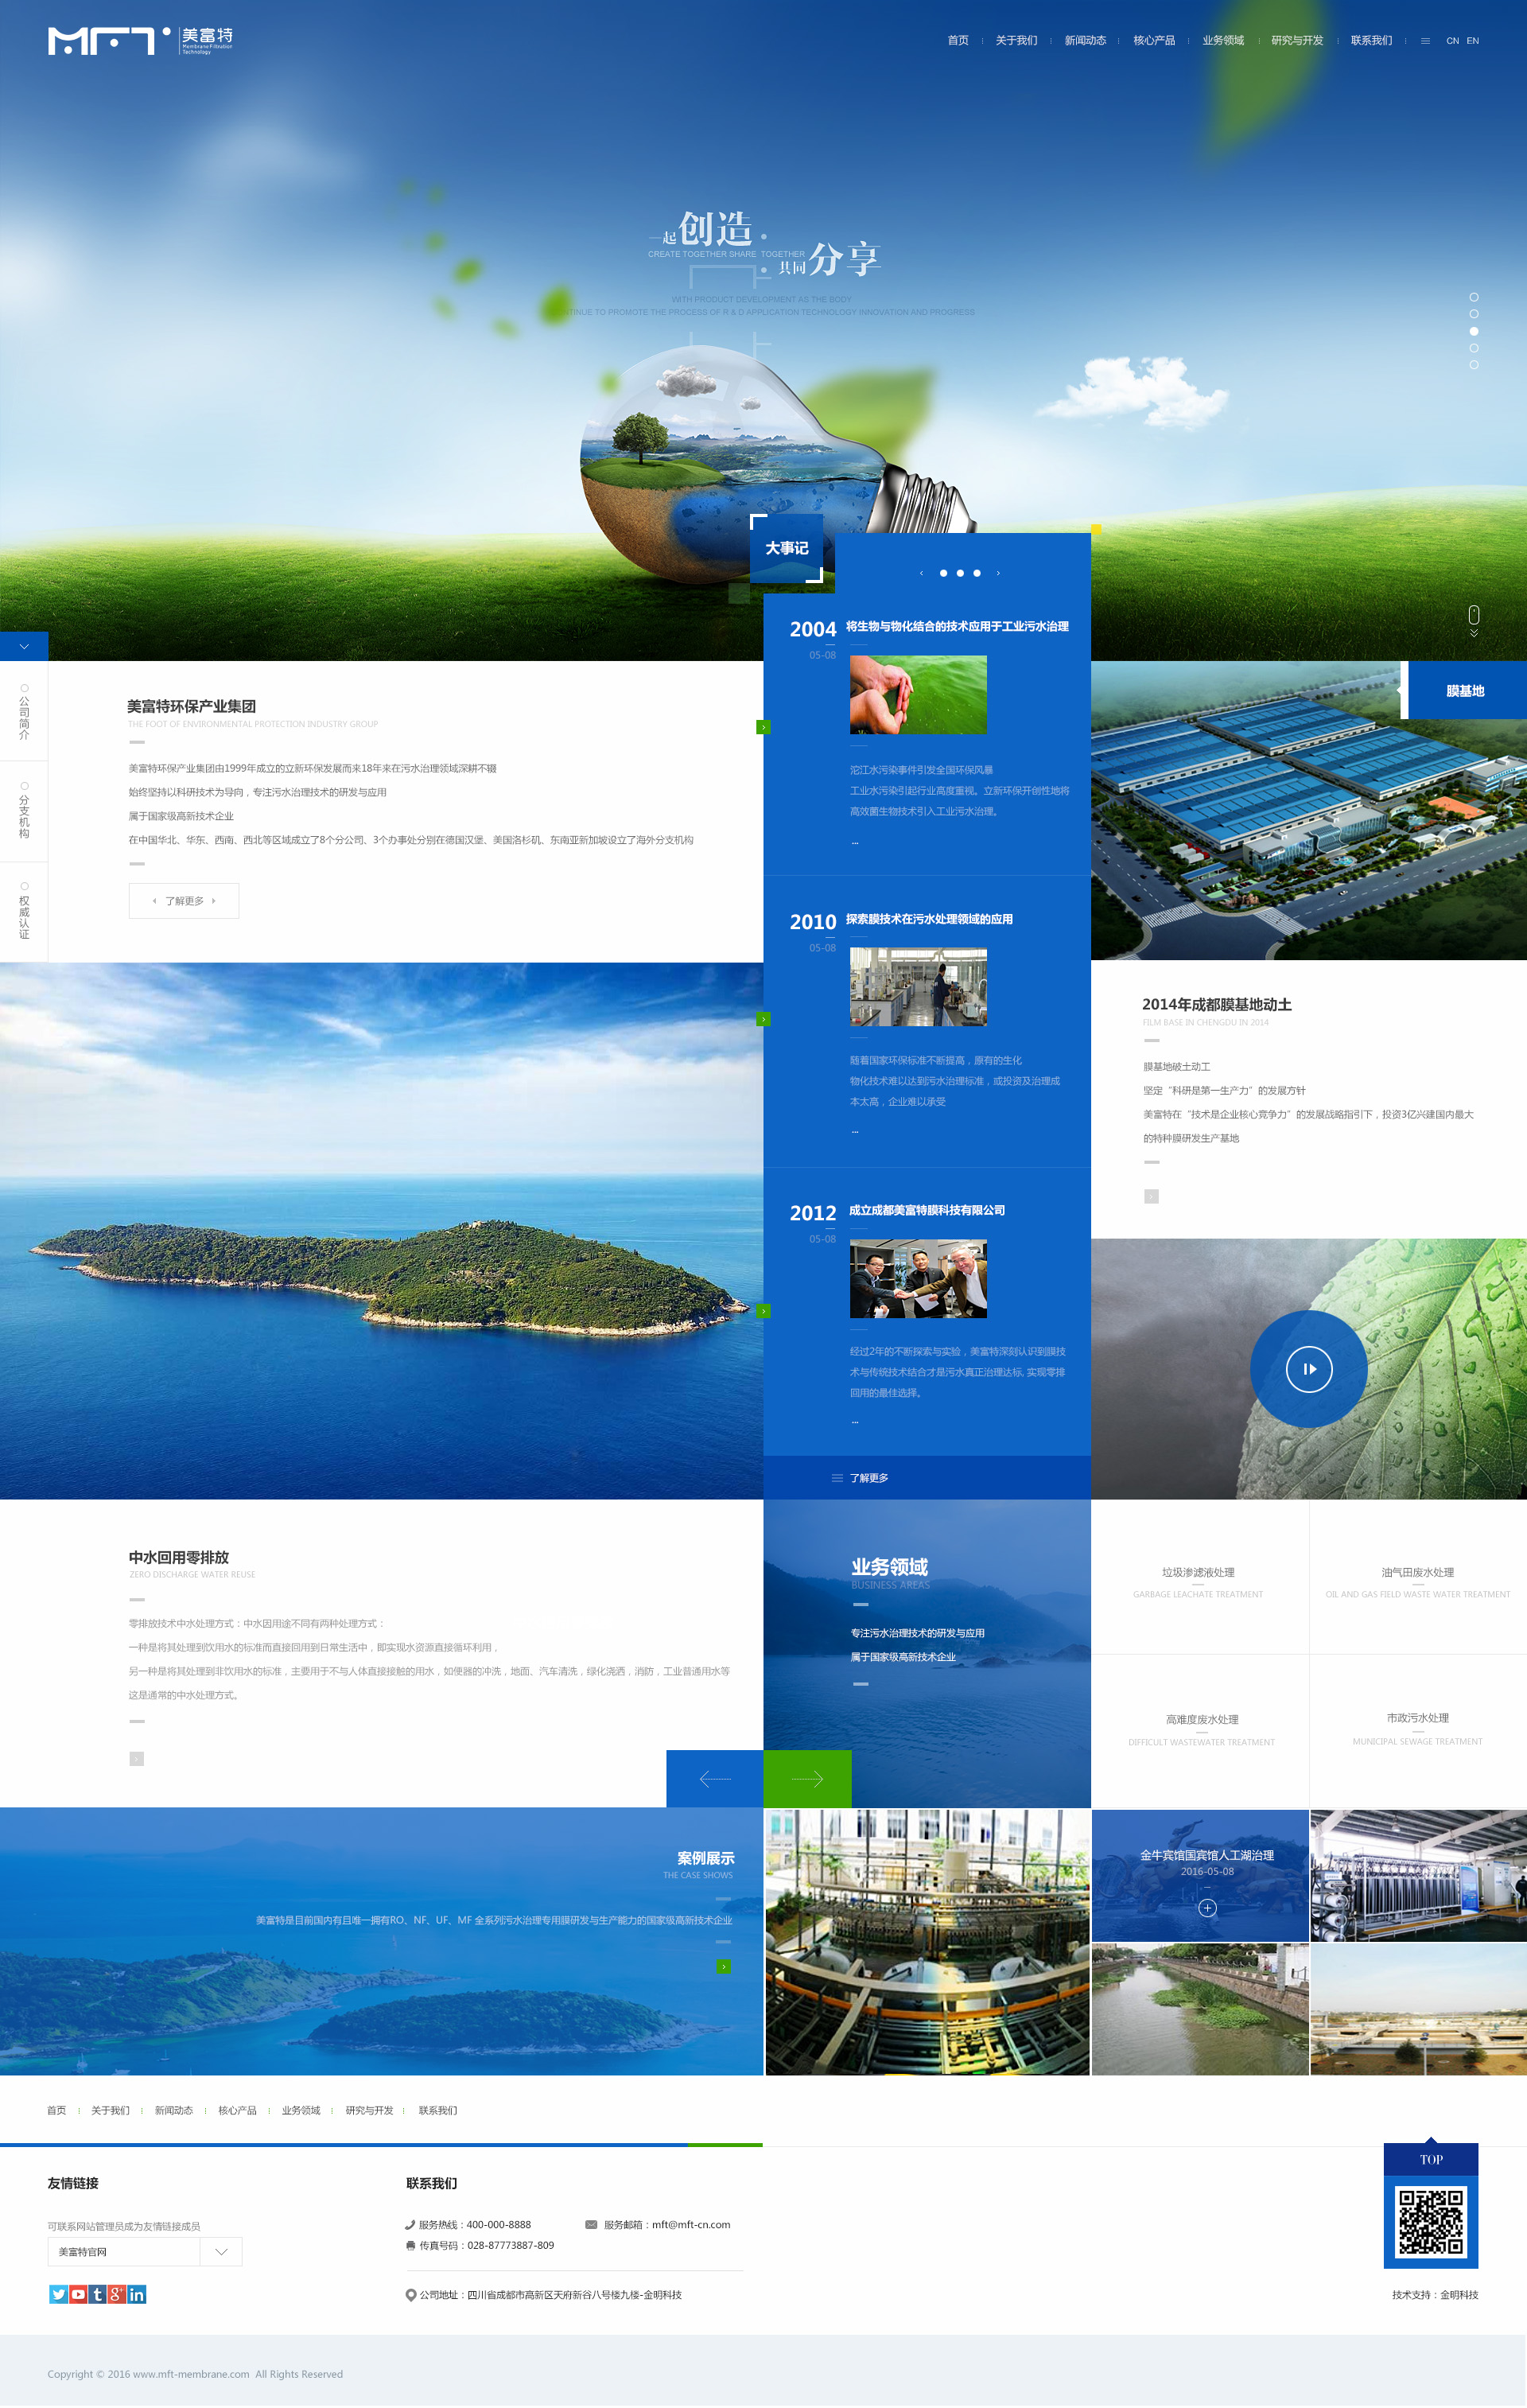 大气蓝色企业网站设计PSD素材源码